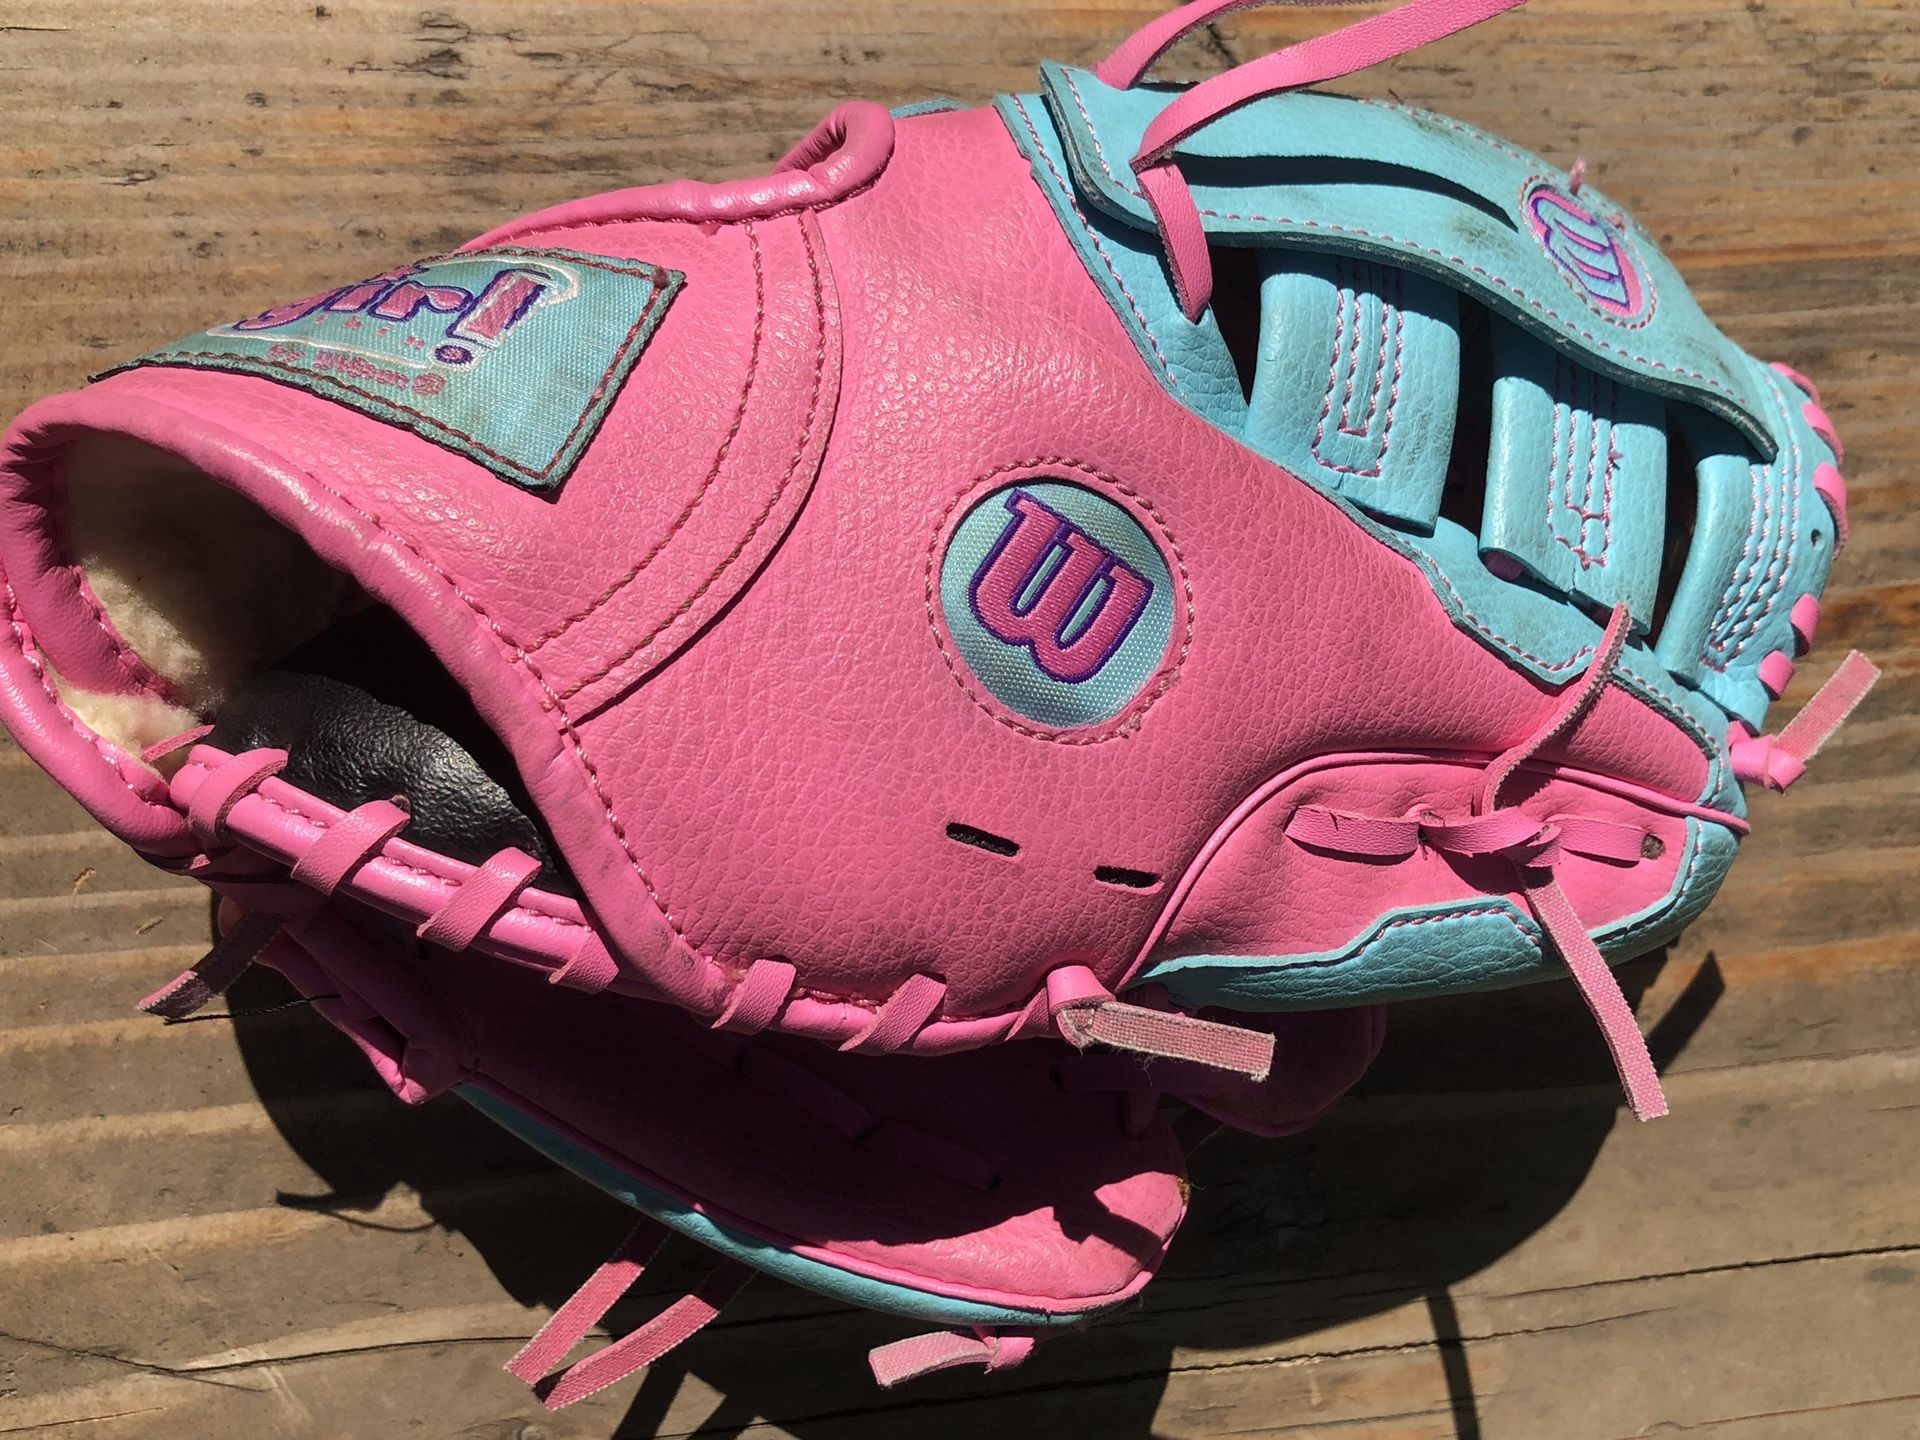 Wilson “it’s a girl thing” 10” Kids T-ball, Softball, Baseball Glove!